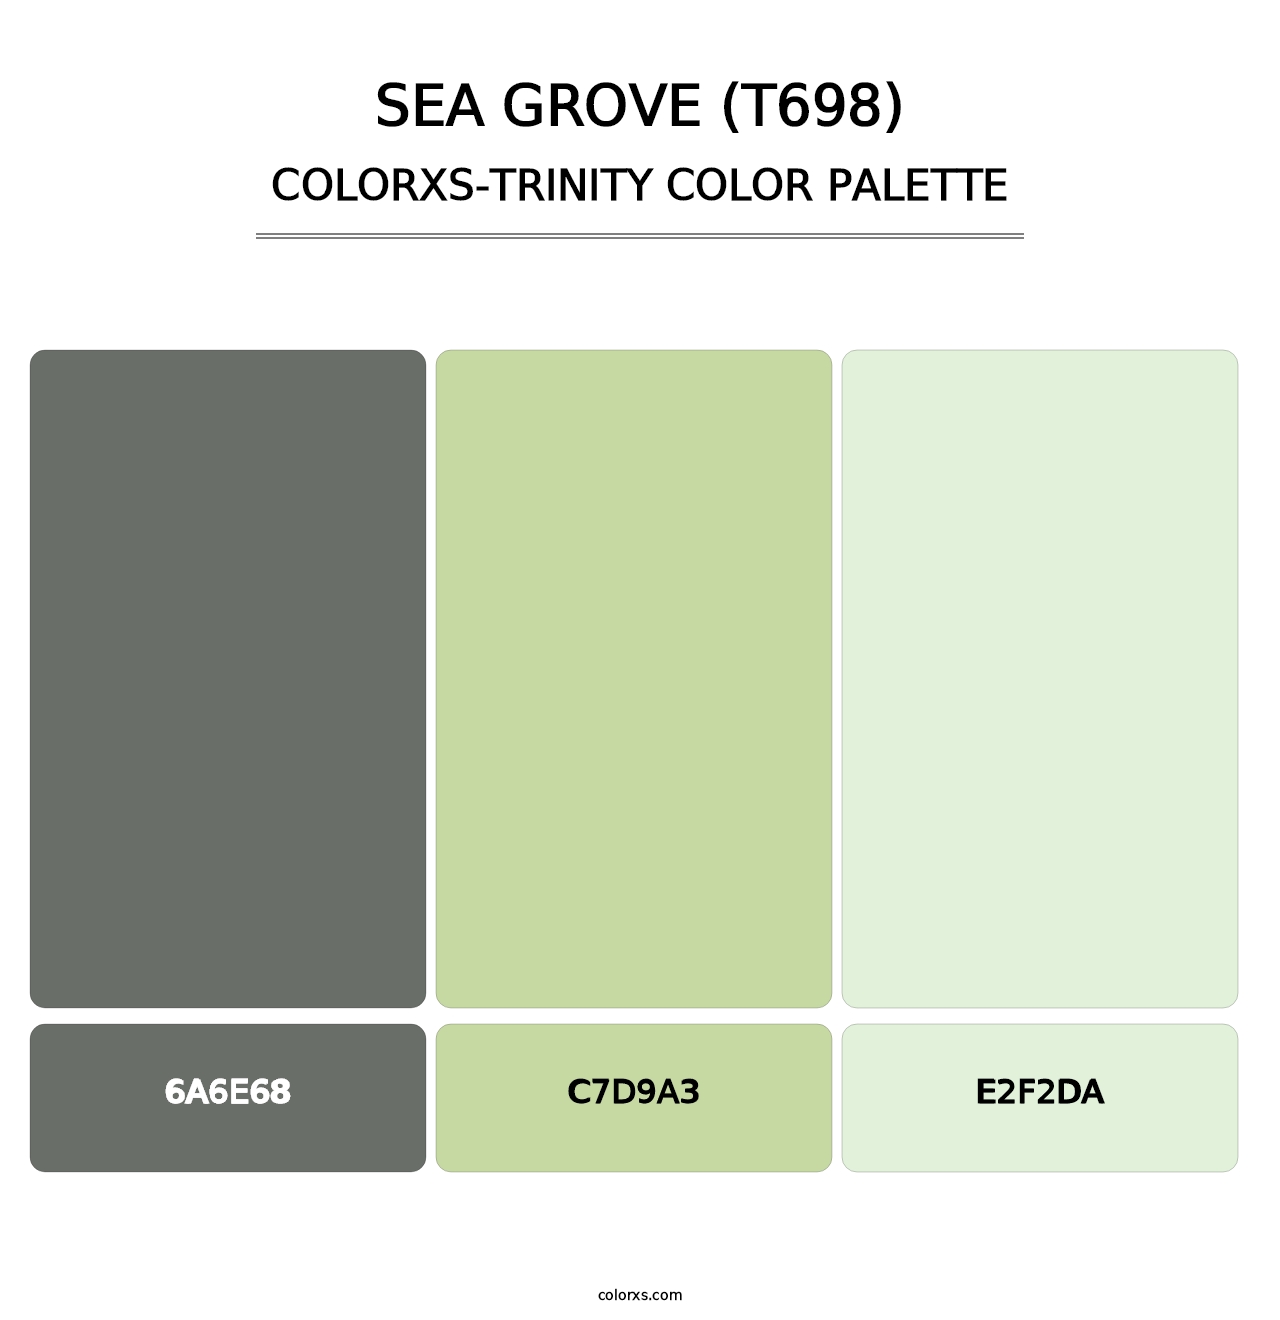 Sea Grove (T698) - Colorxs Trinity Palette